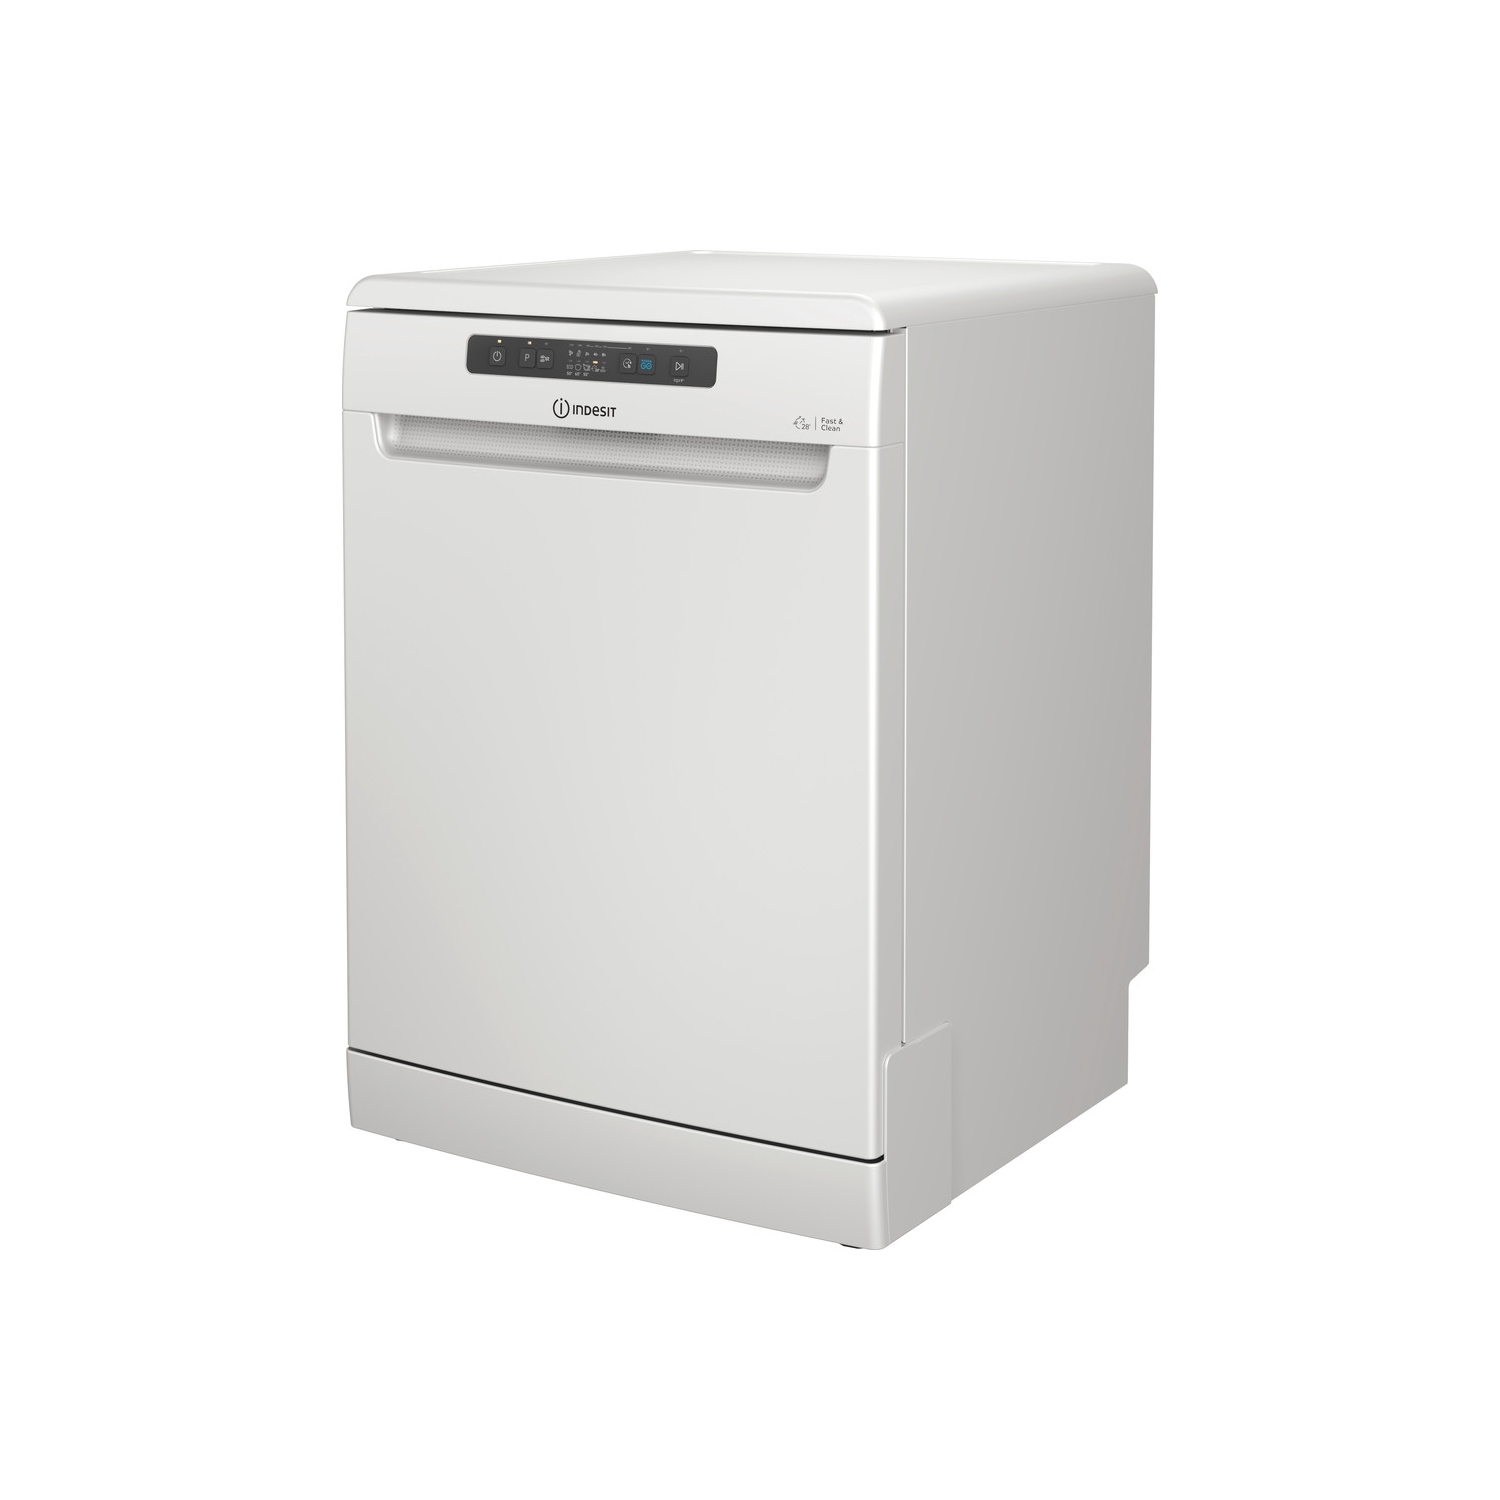 Indesit DFC2B16UK Full Size Dishwasher - White - 13 Place Settings - 0